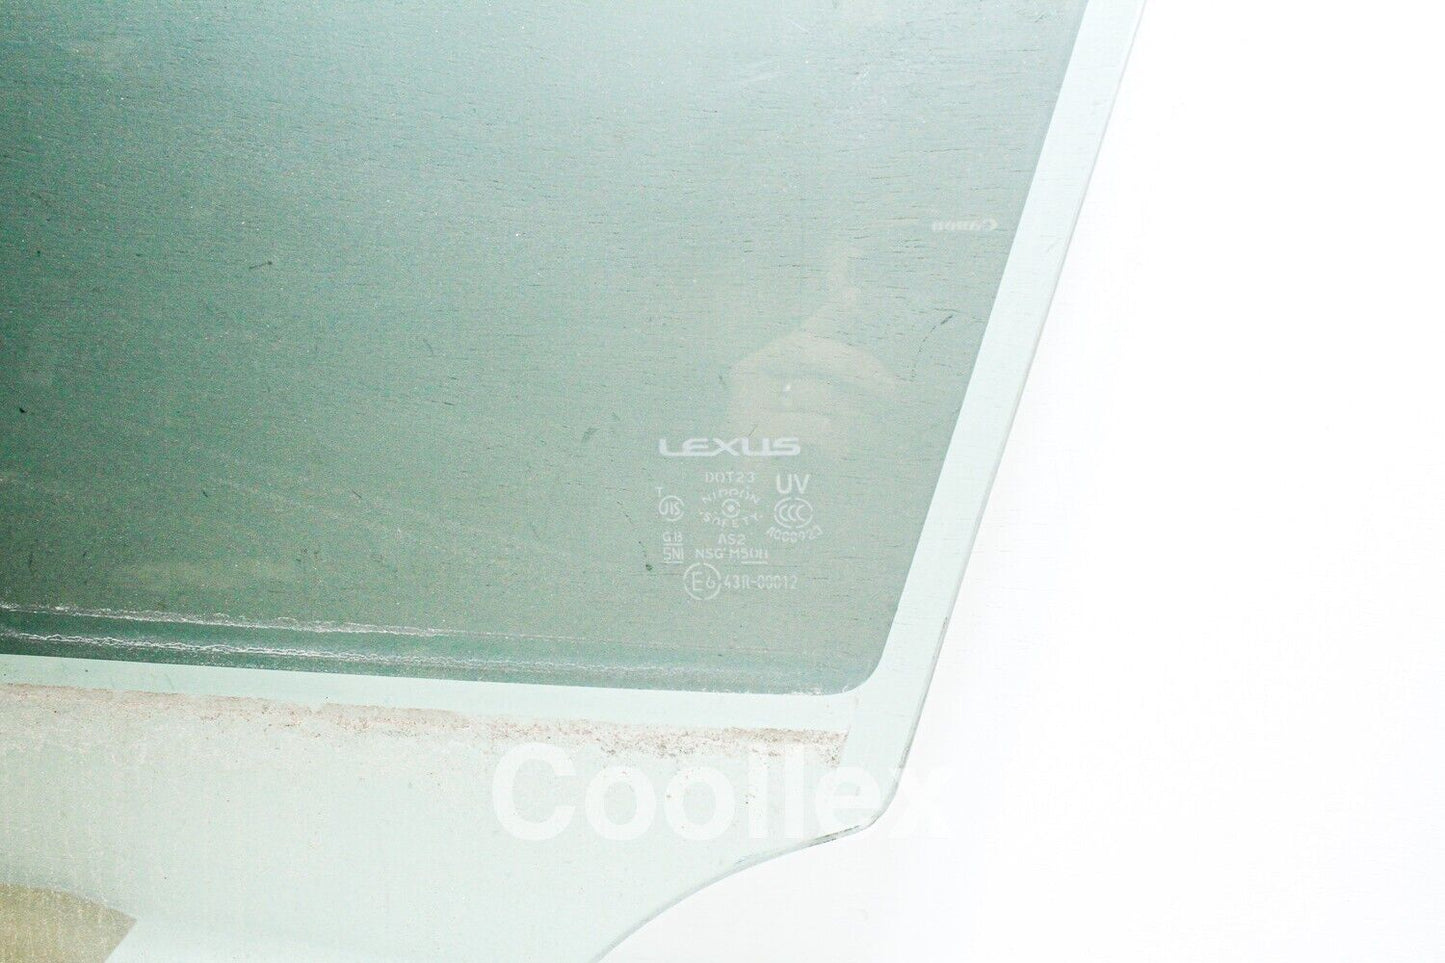 09-12 Lexus Is250 Awd Front Left Door Window Glass 68102-53052 Oem